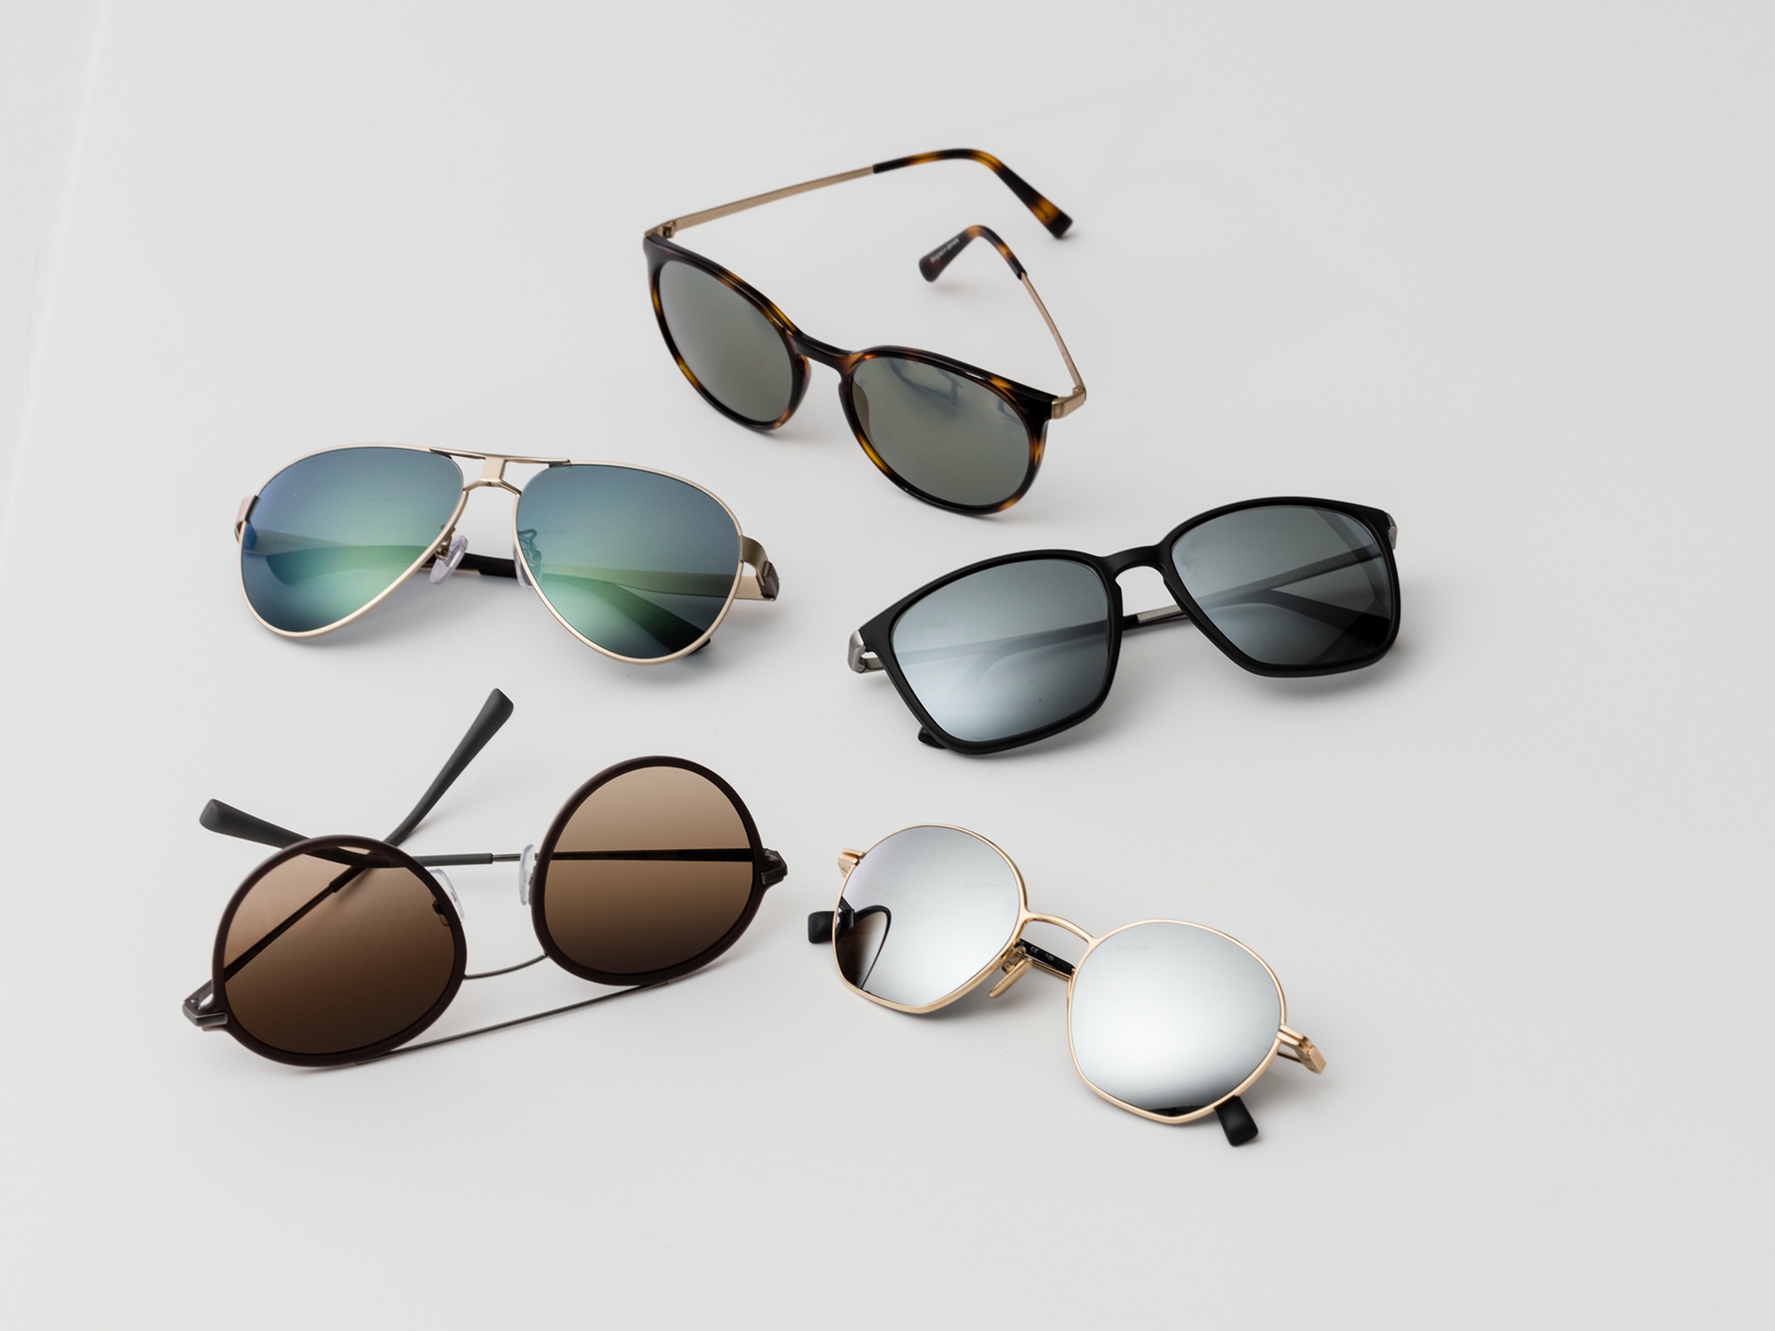 Cinco pares de gafas de sol, con tonalidades clásicas de protección solar para condiciones de luminosidad intermedias y brillantes.